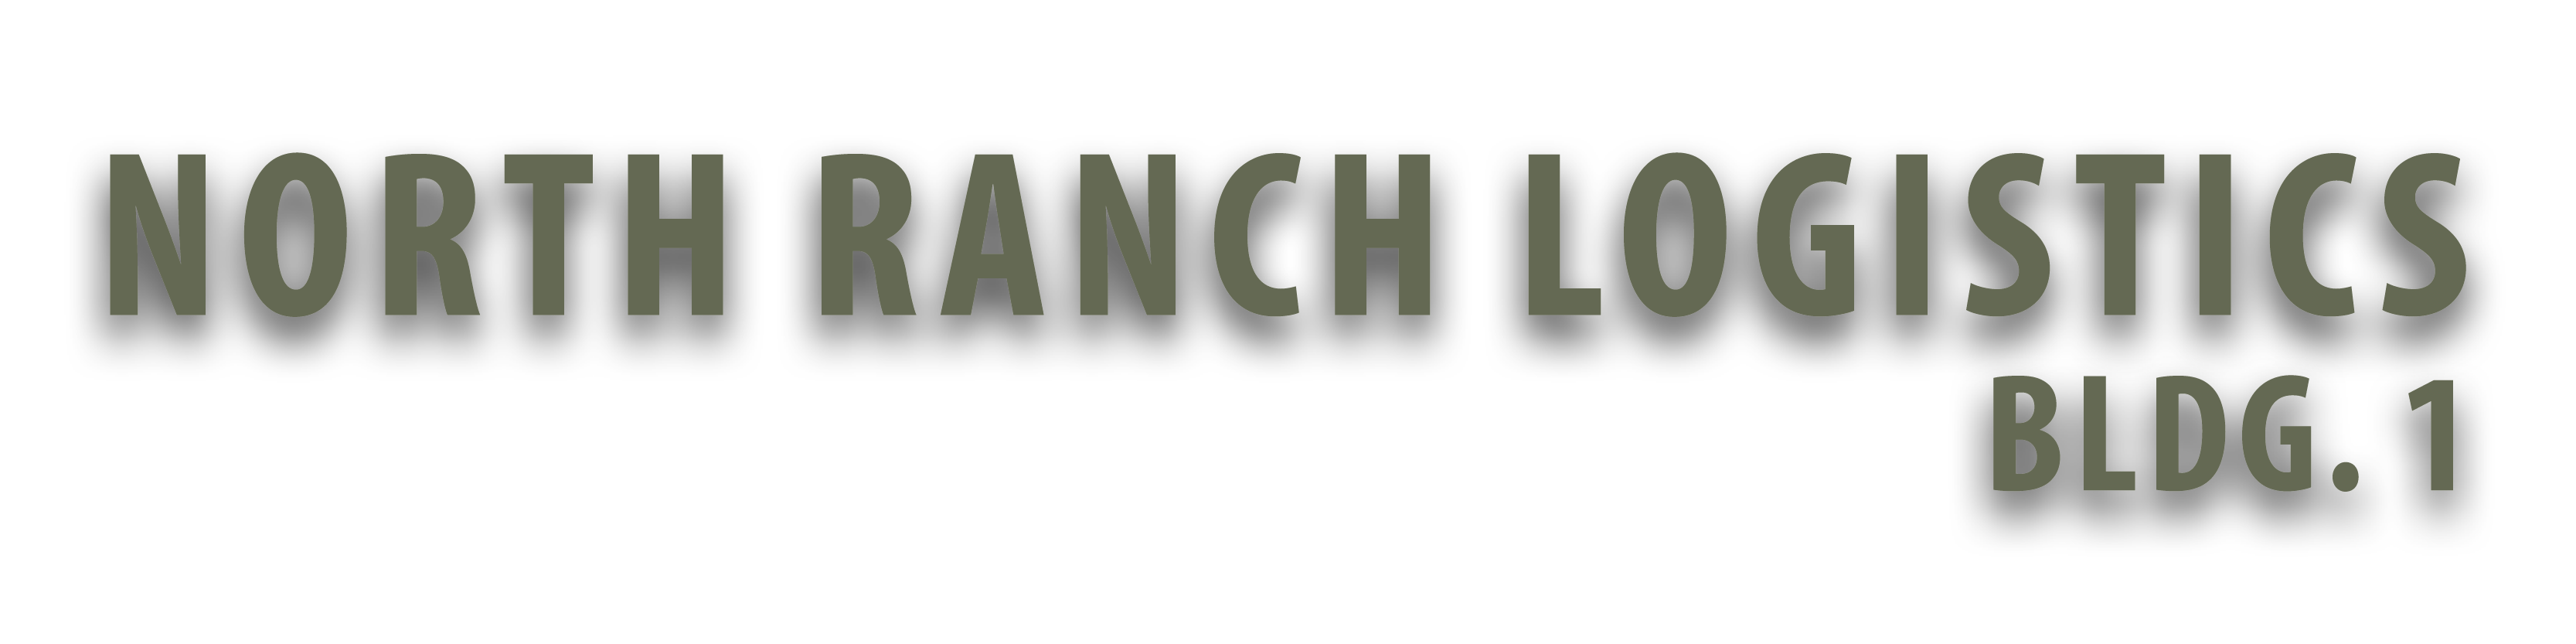 North Ranch Logistics Building 1 logo